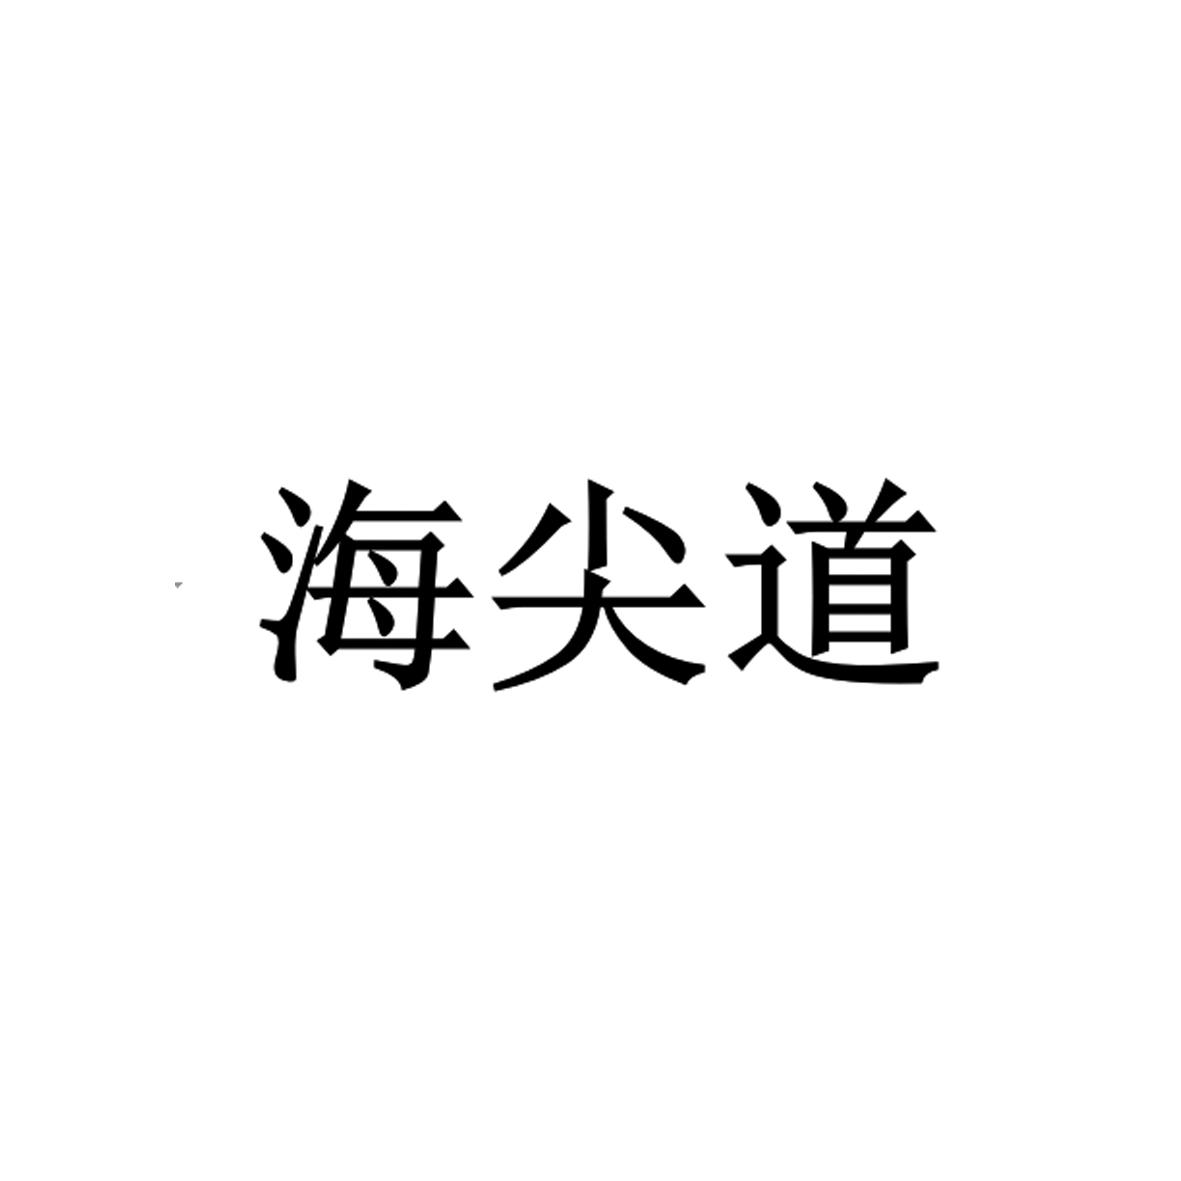 海尖道logo